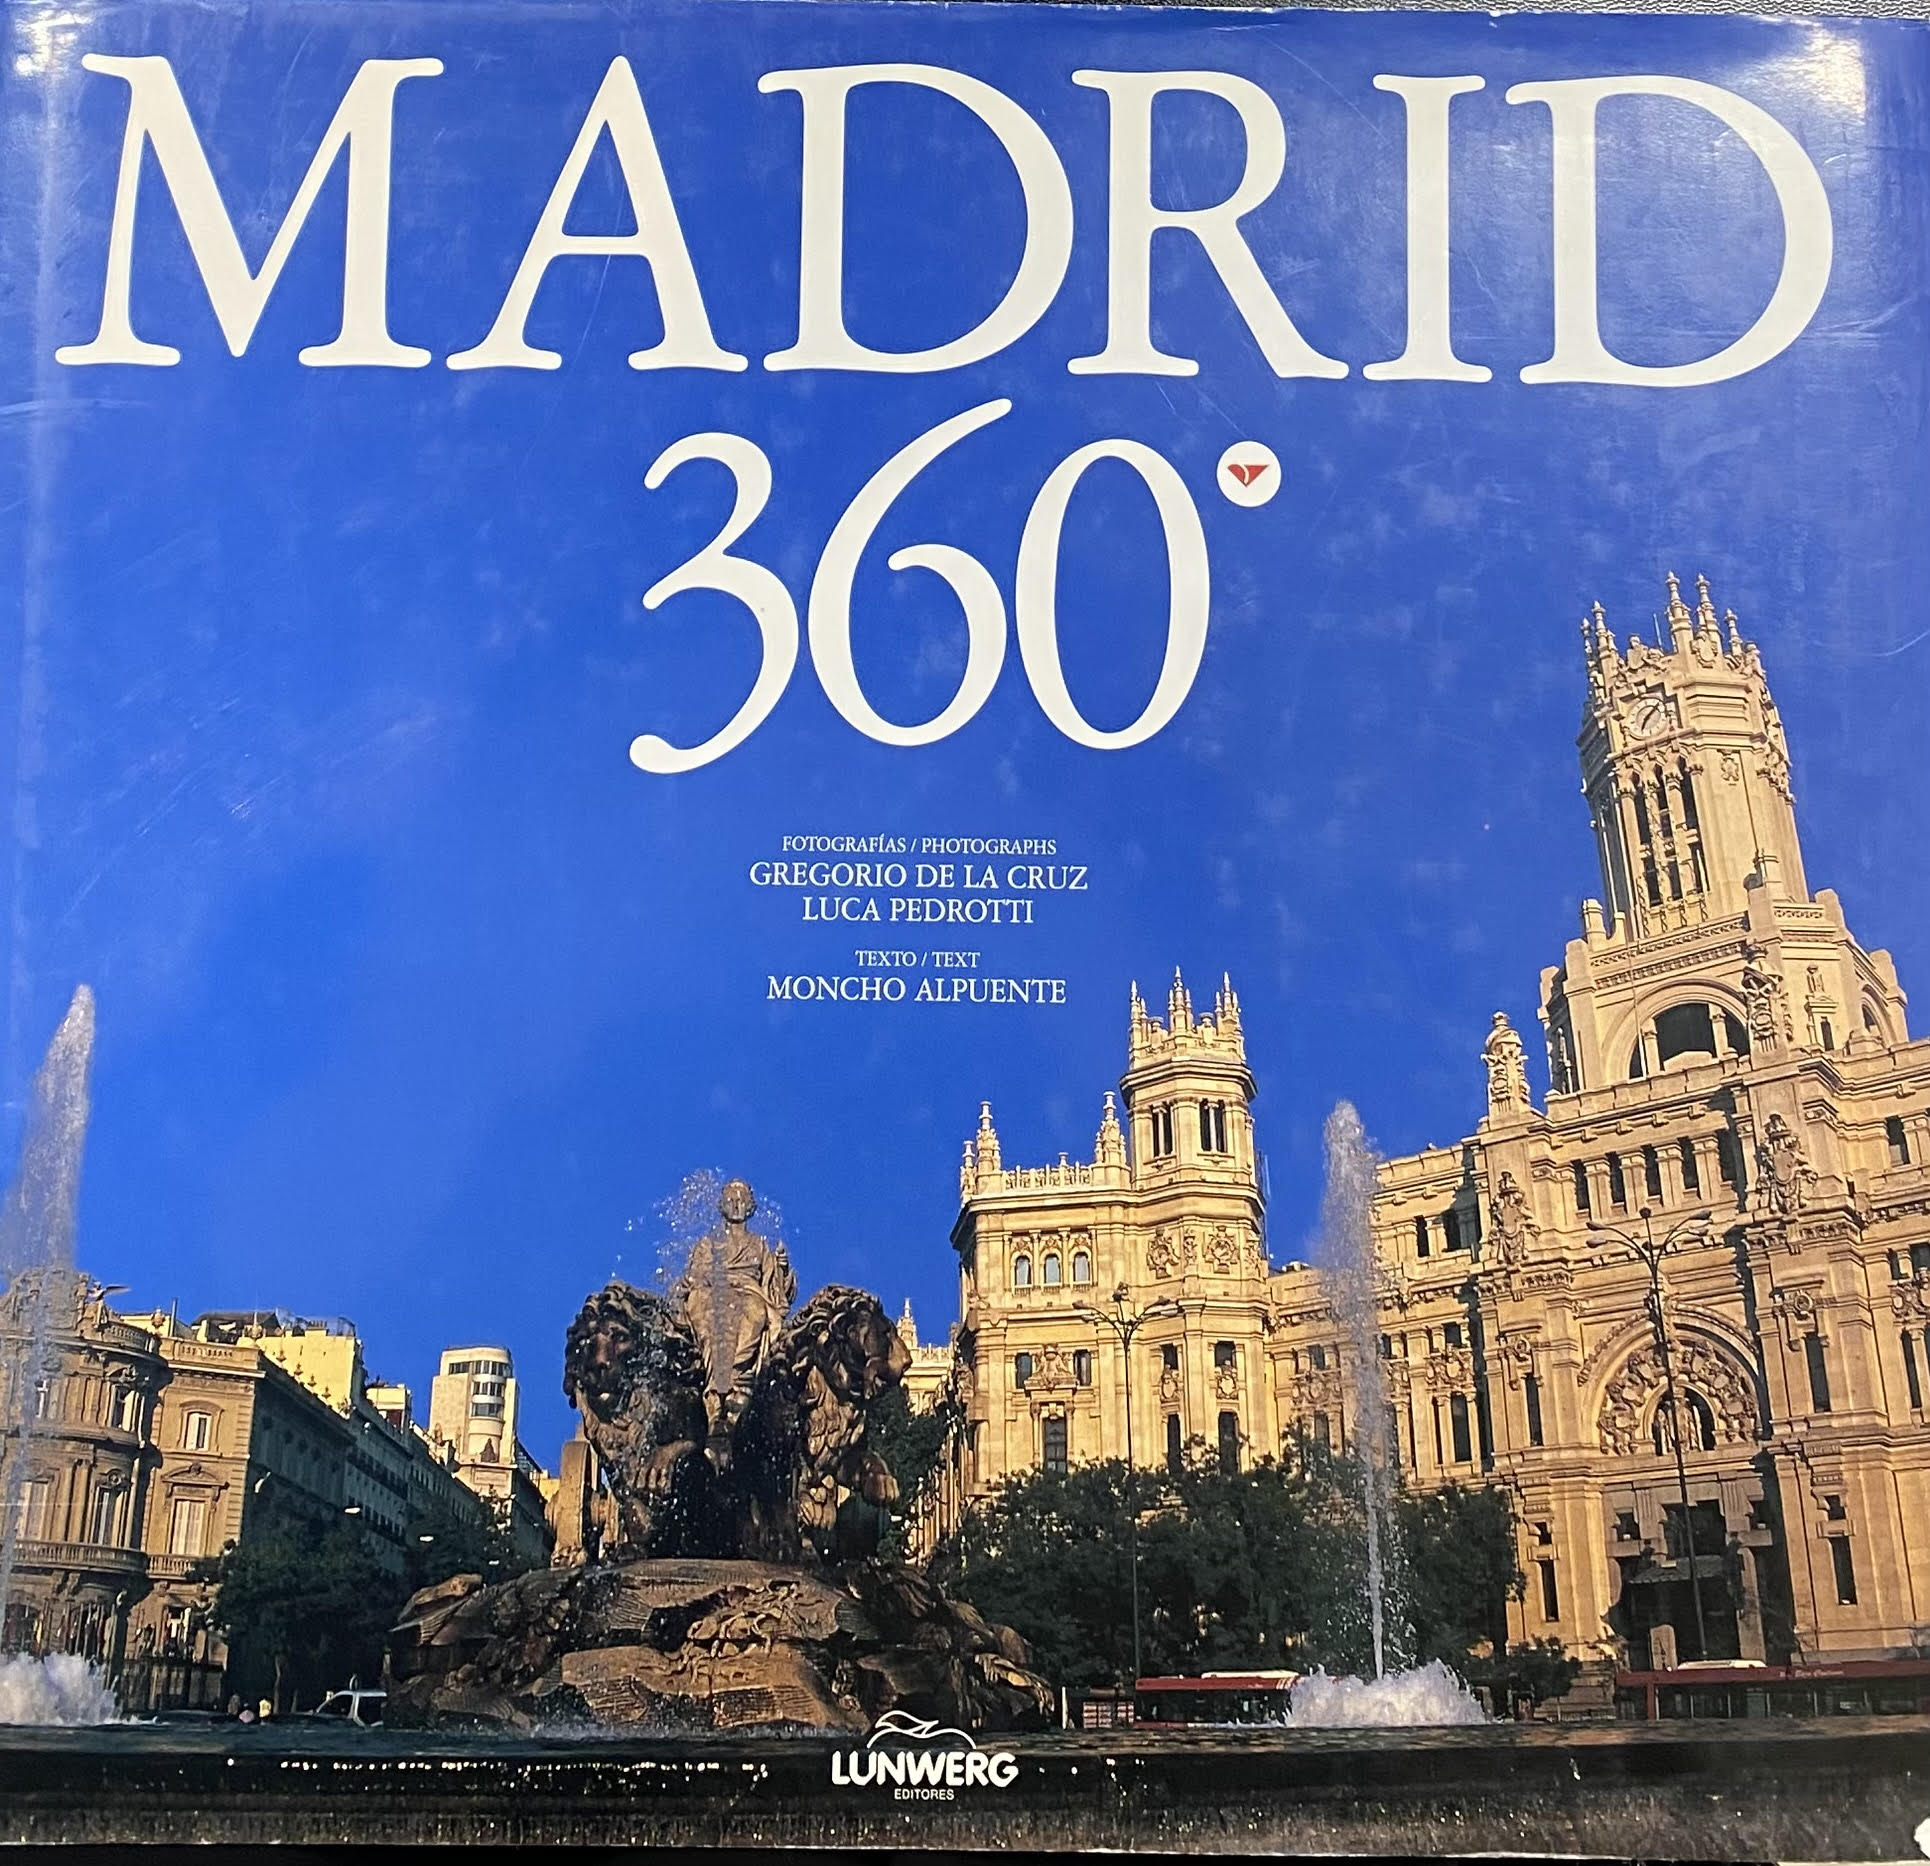 MADRID 360